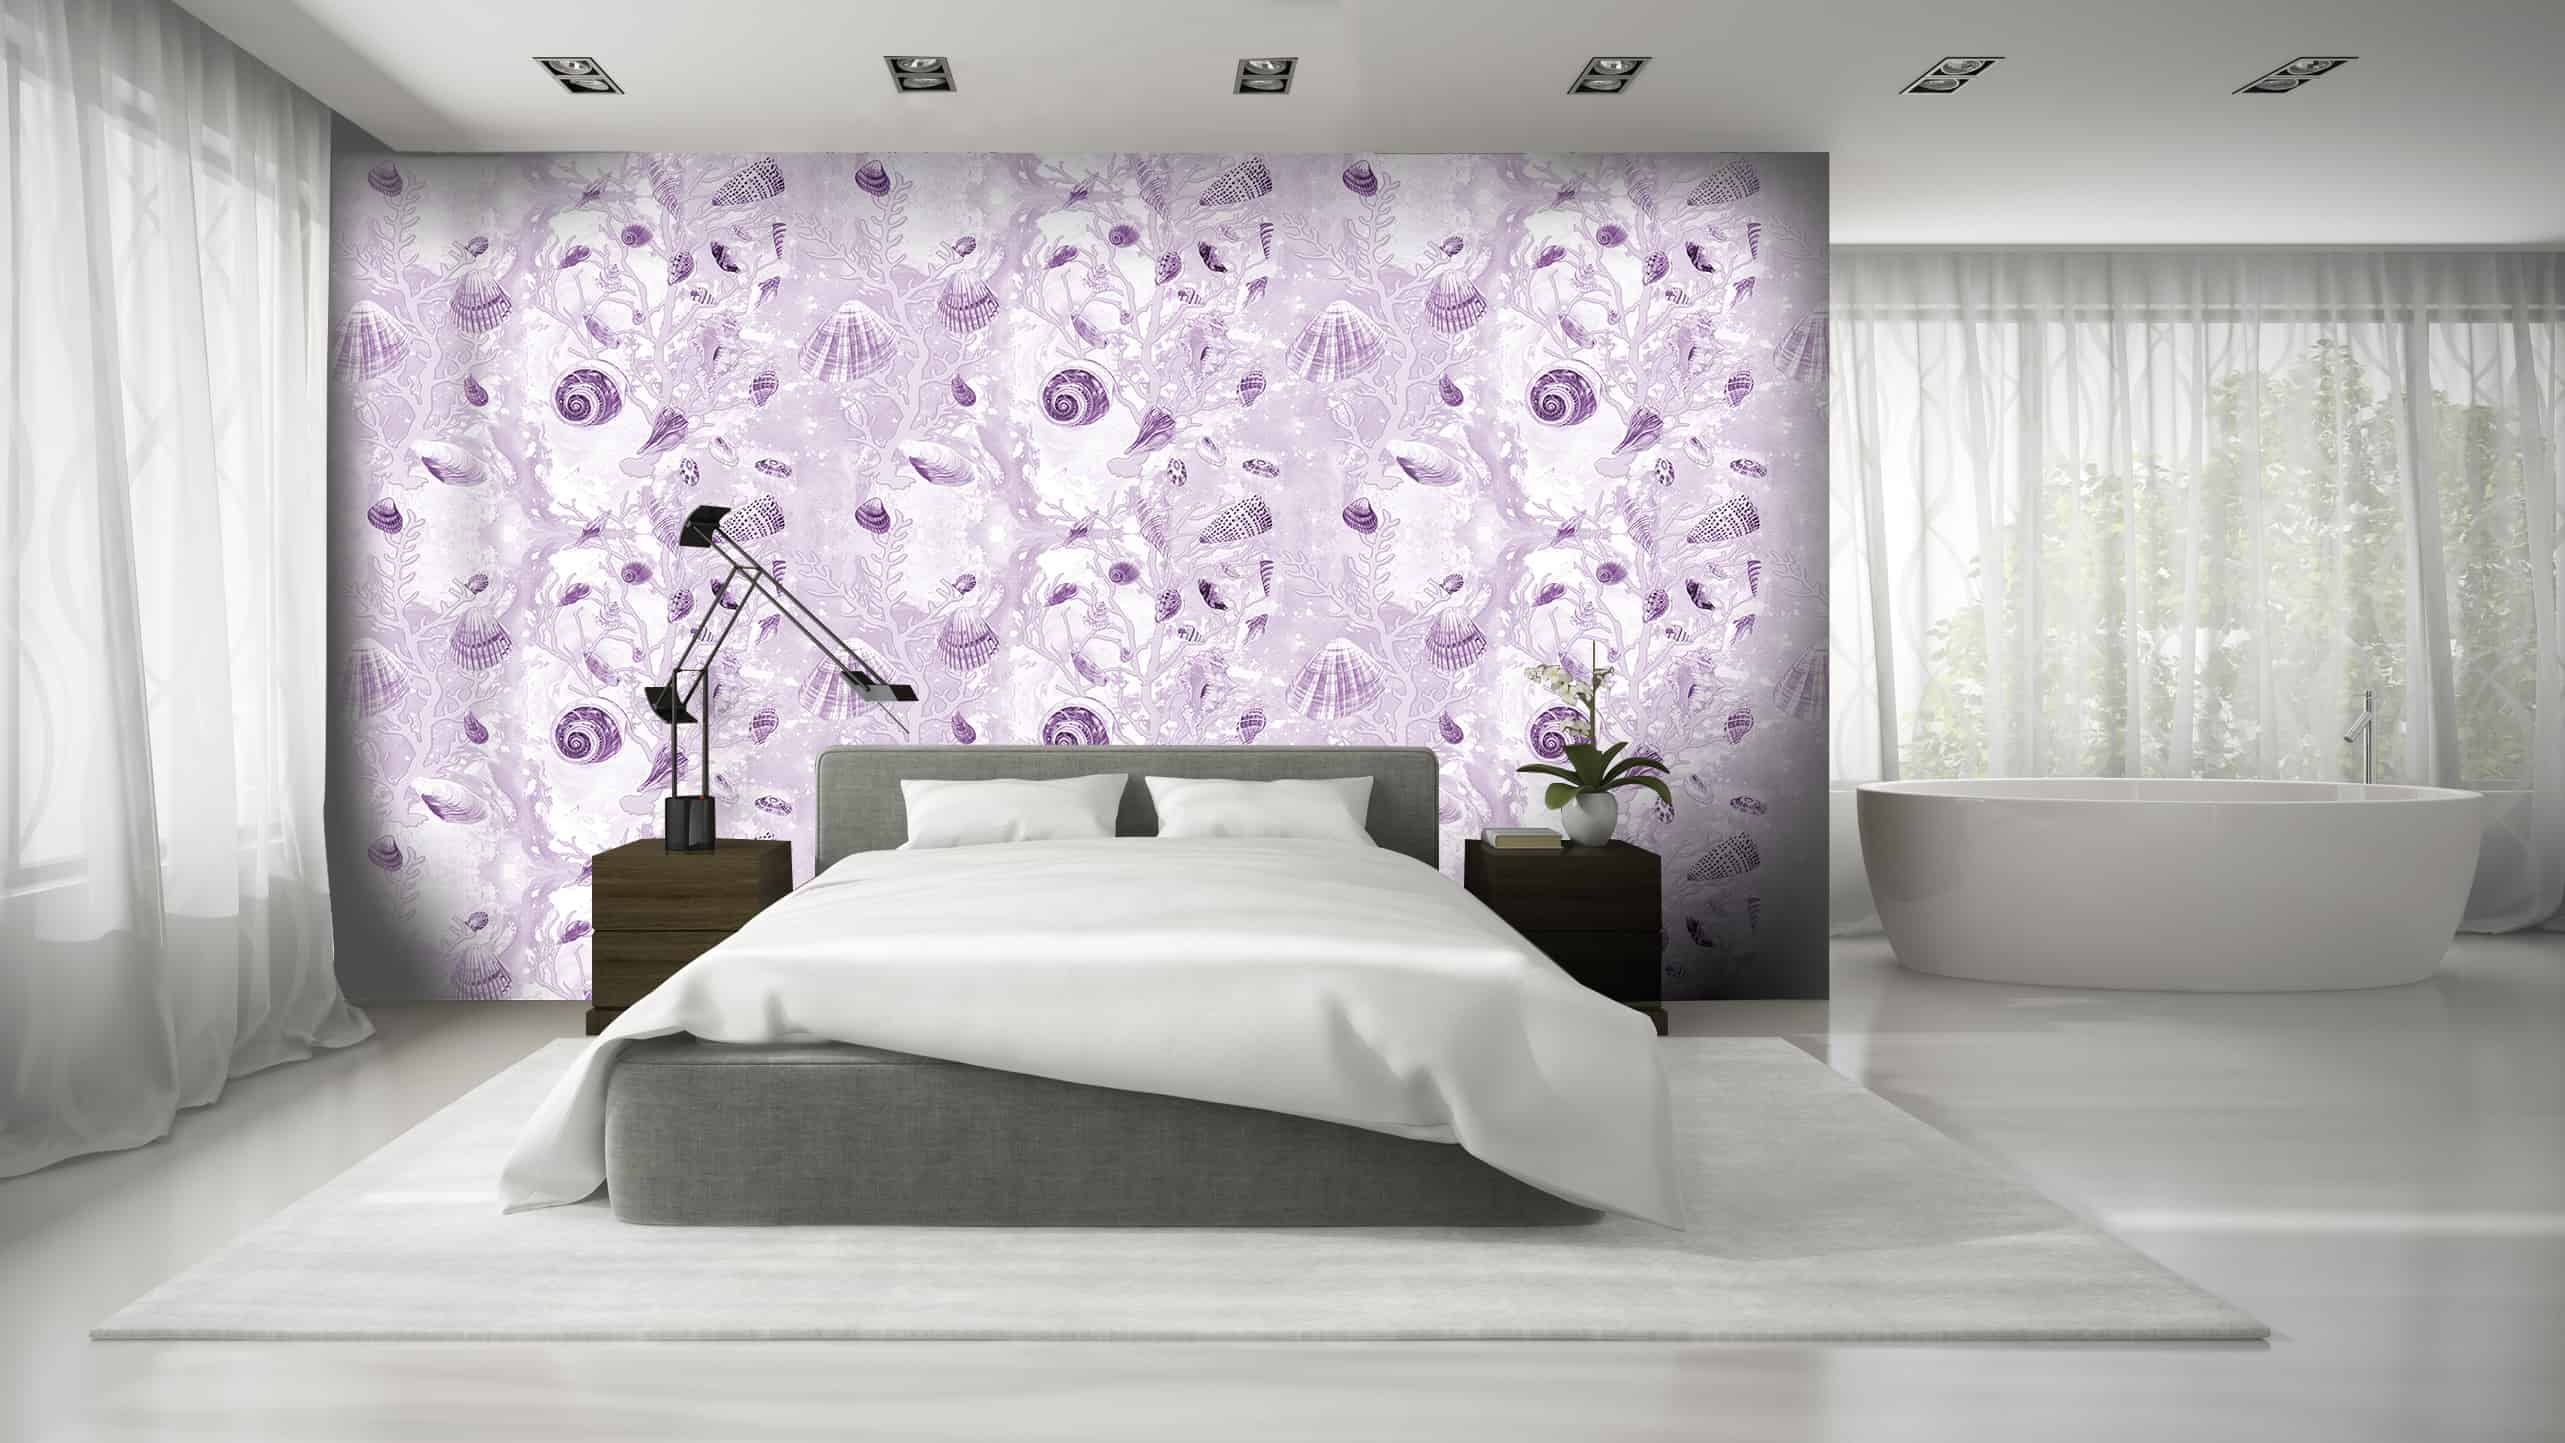 Simple Elegance - Minimalist Bedroom Decor Ideas